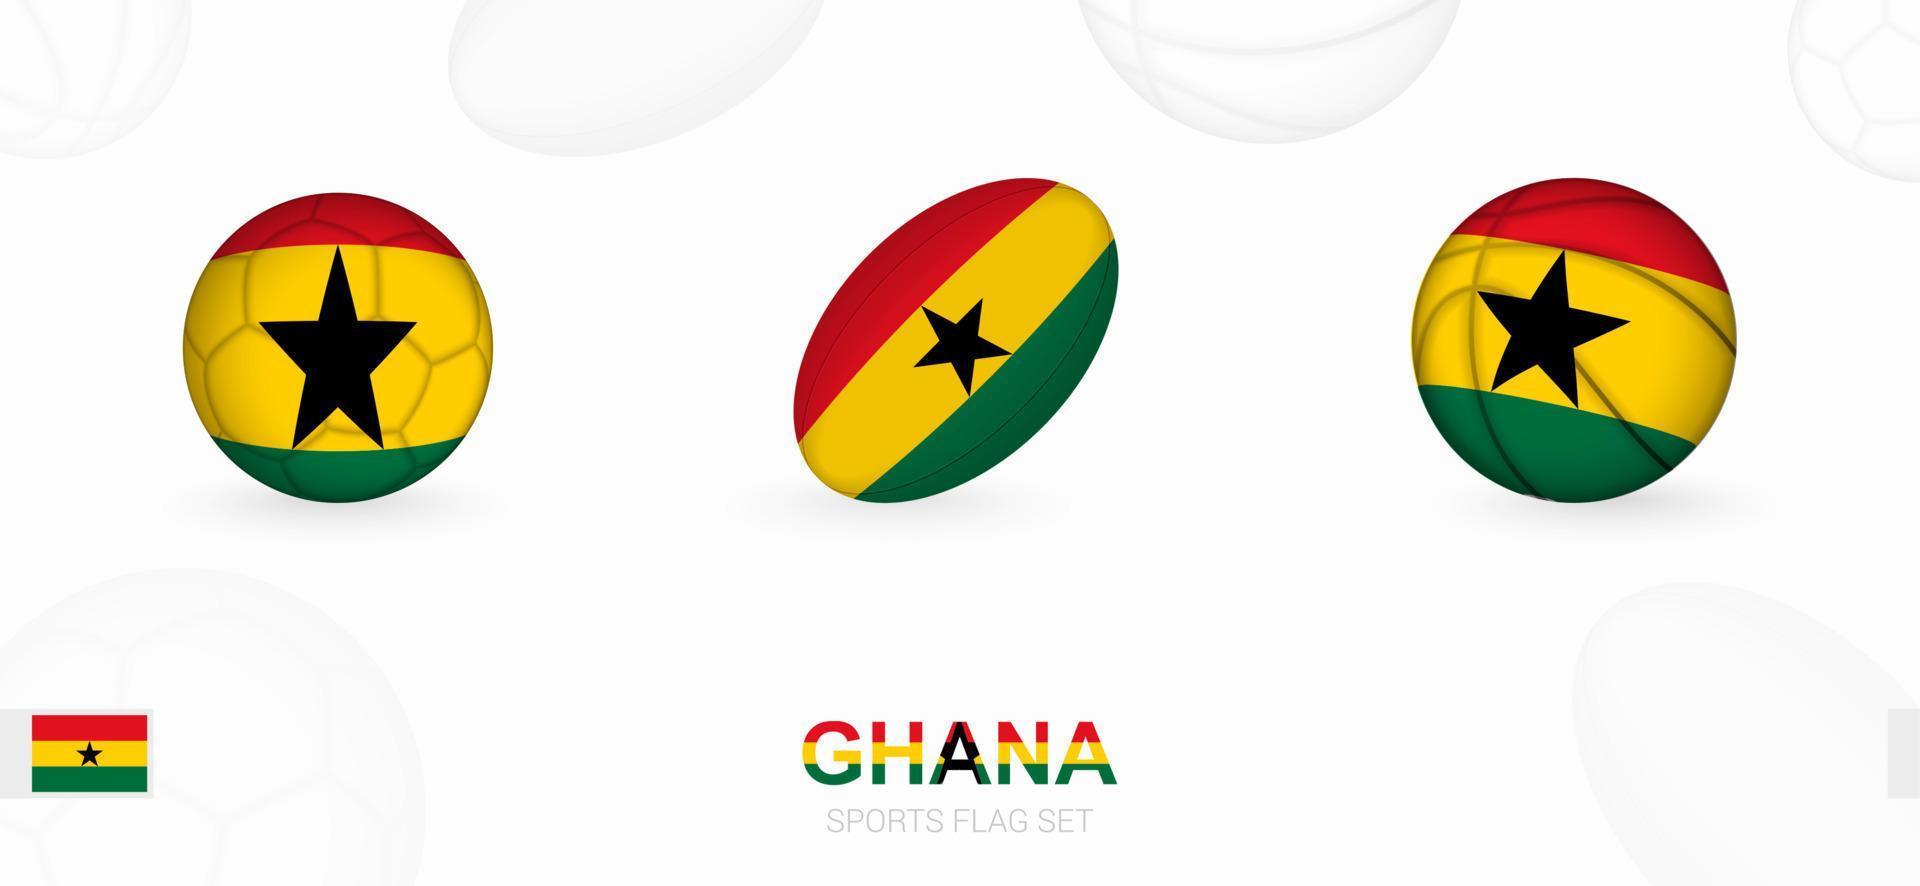 Esportes ícones para futebol, rúgbi e basquetebol com a bandeira do Gana. vetor